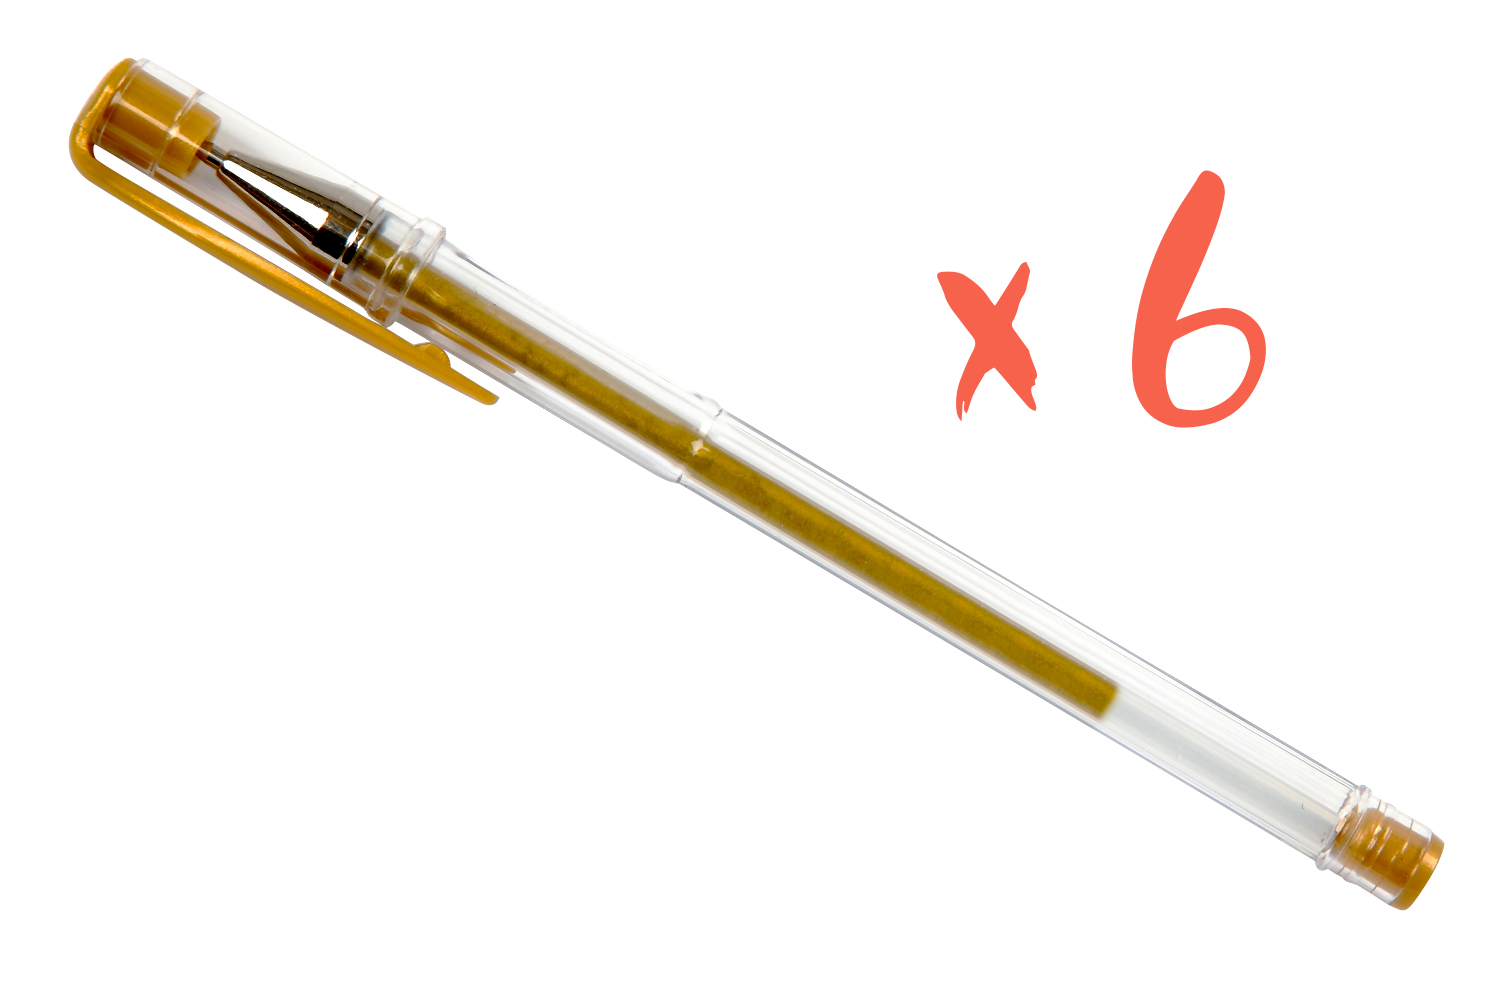 30 stylos bille encre gel métallisés pailletés : Chez